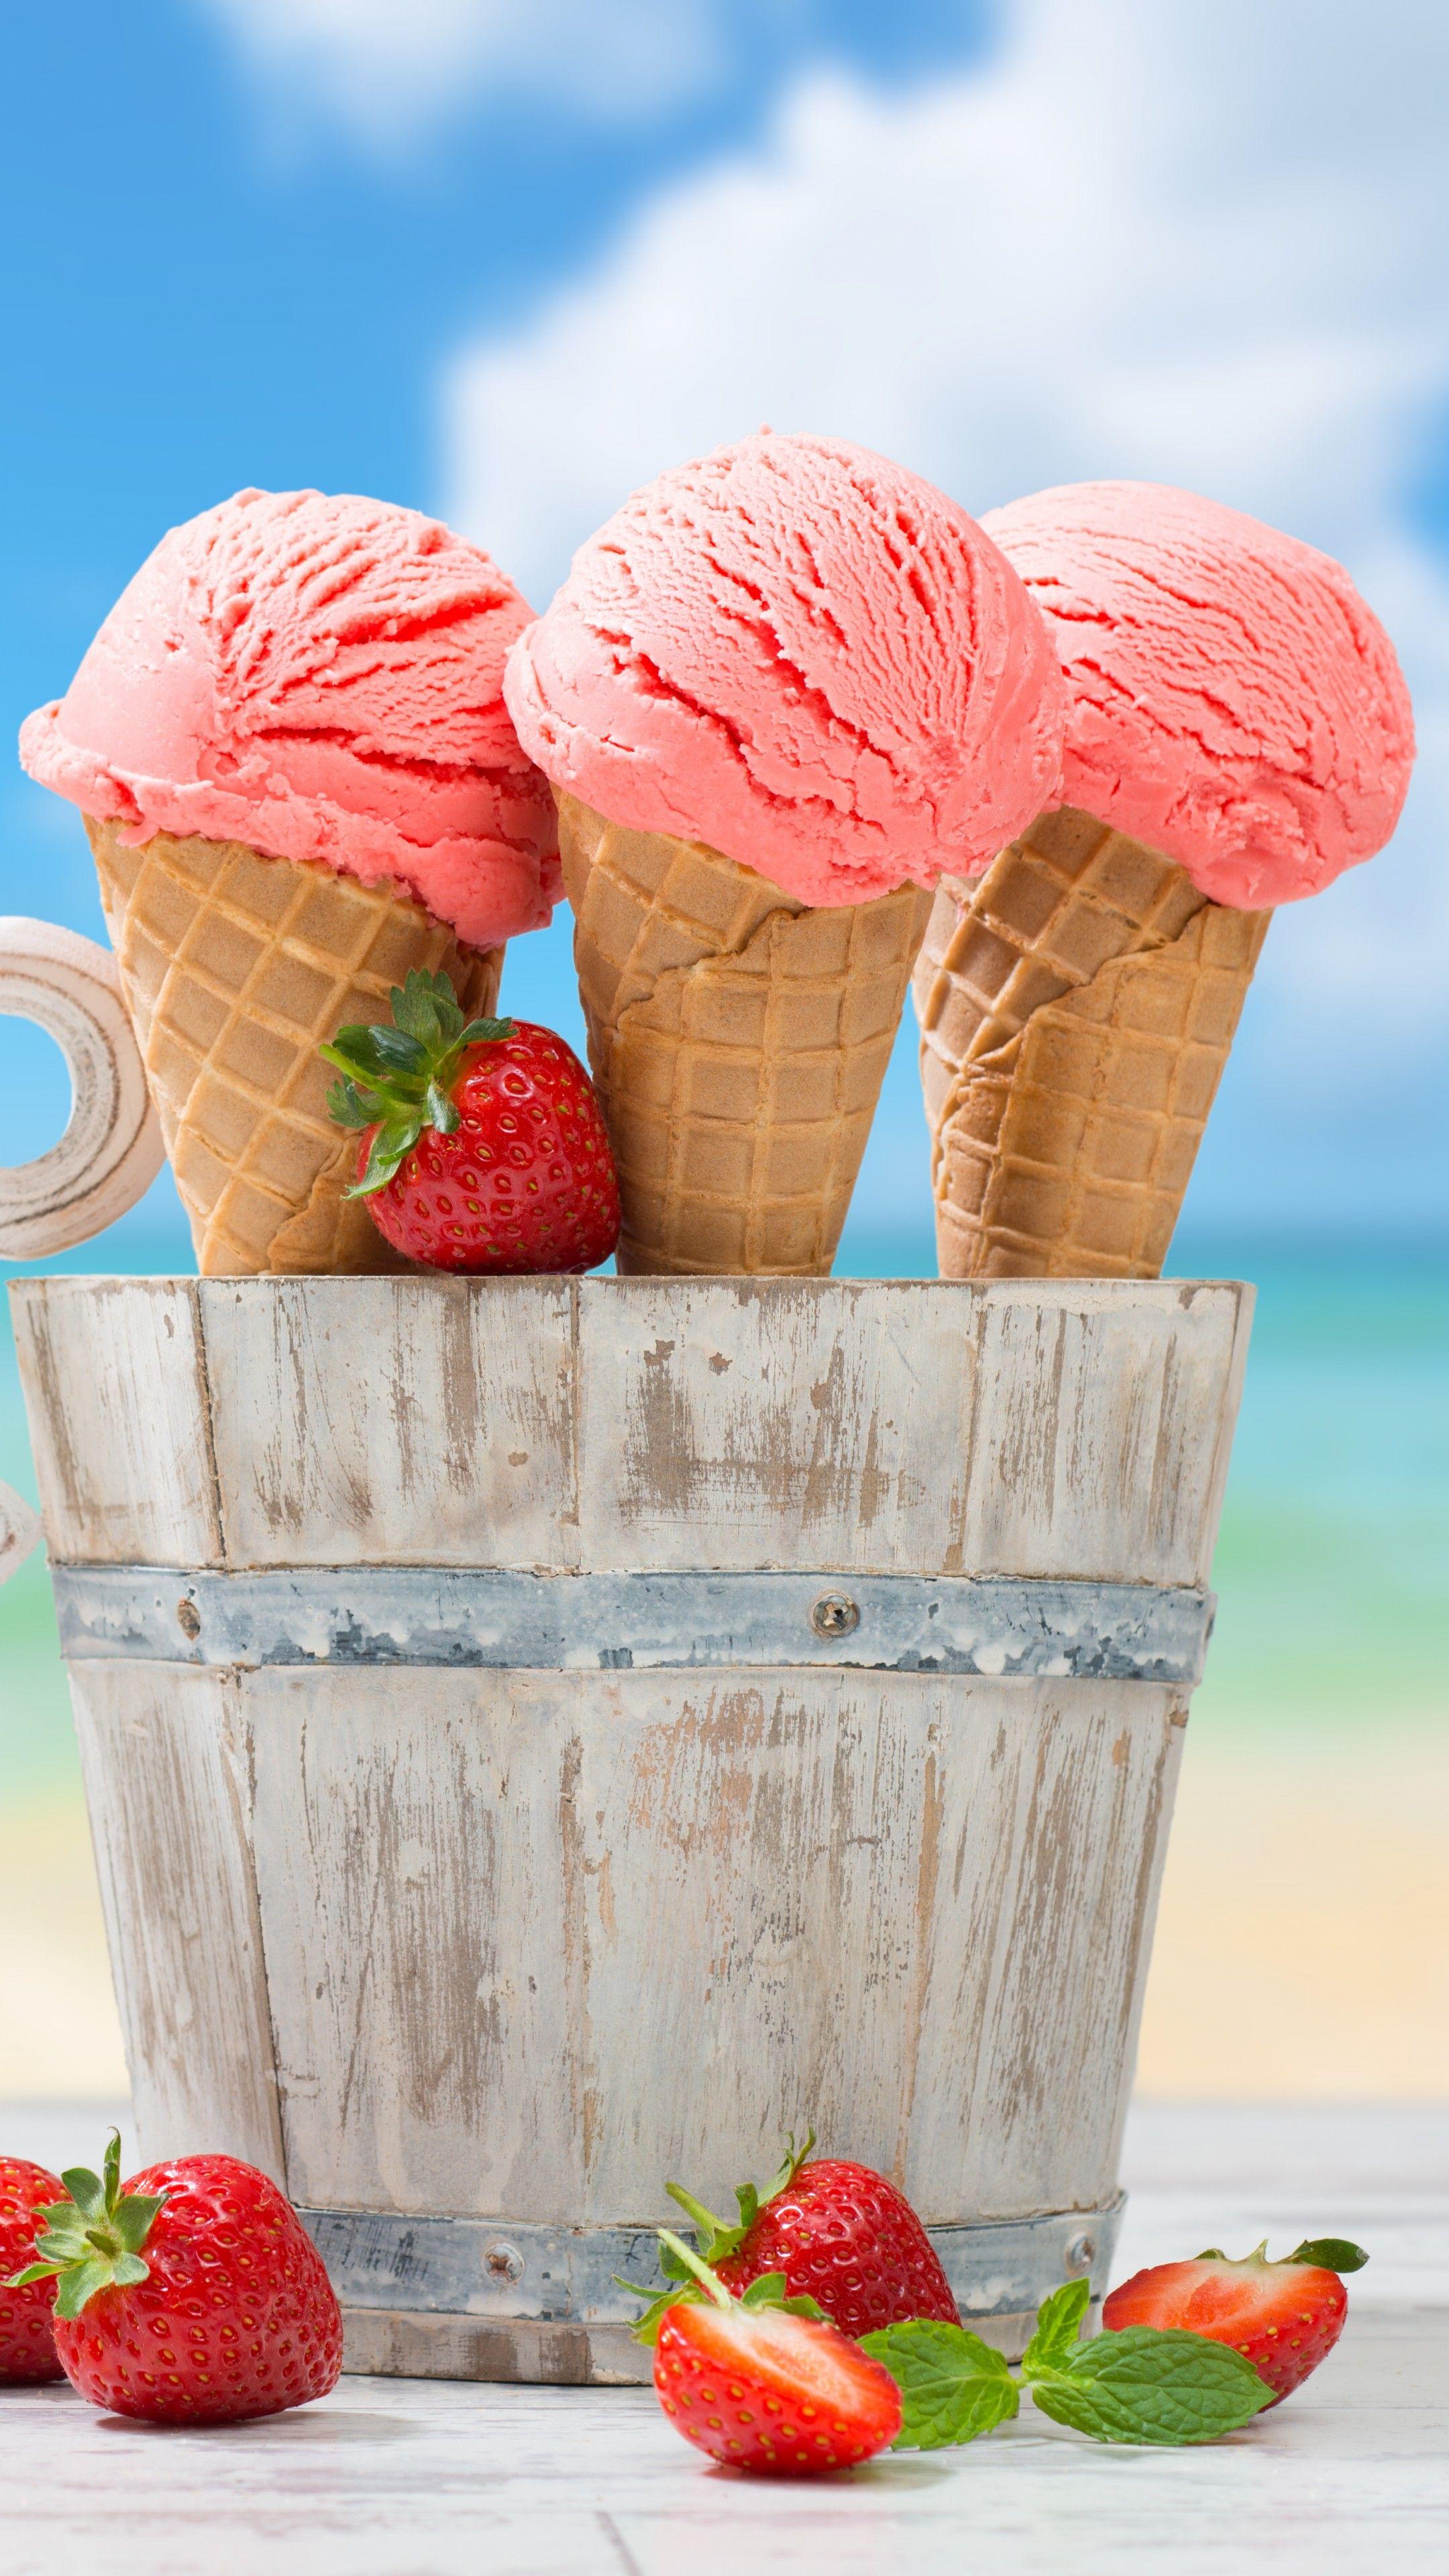 دانلود پوستر عمودی قشنگ برای مغازه بستنی فروشی با کیفیت Full HD